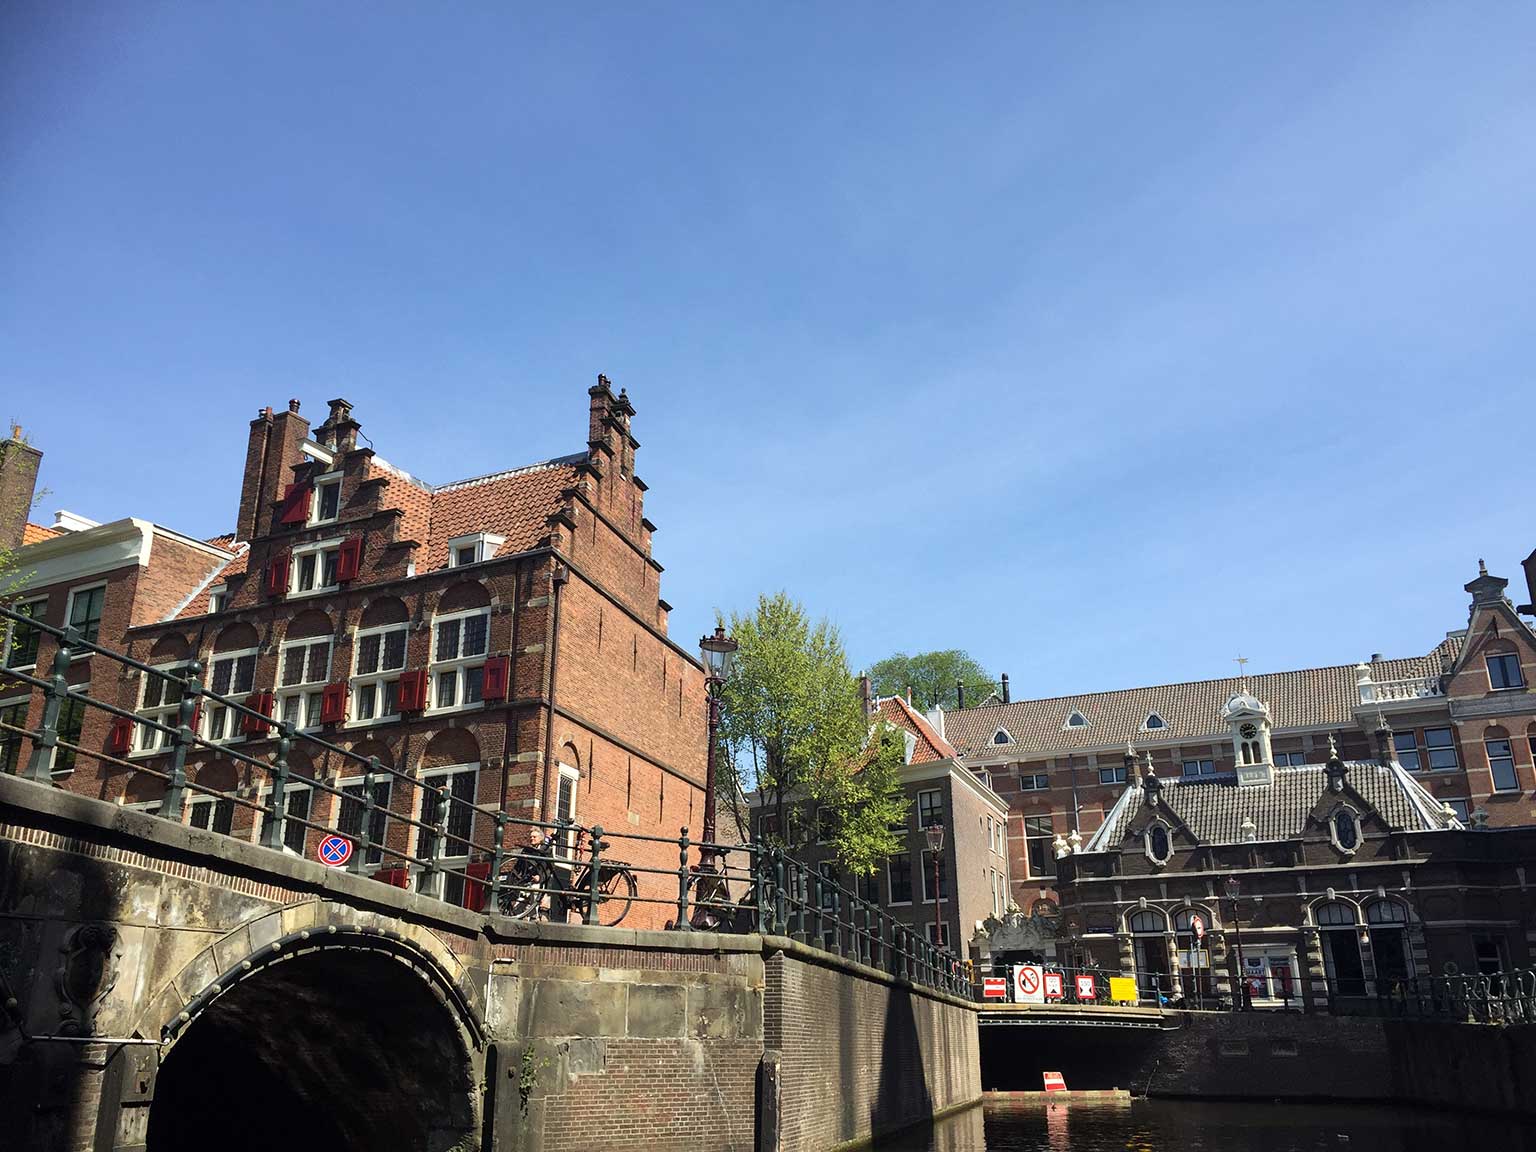 Huis Aan De Drie Grachten, Amsterdam, gezien vanaf het water van de Grimburgwal